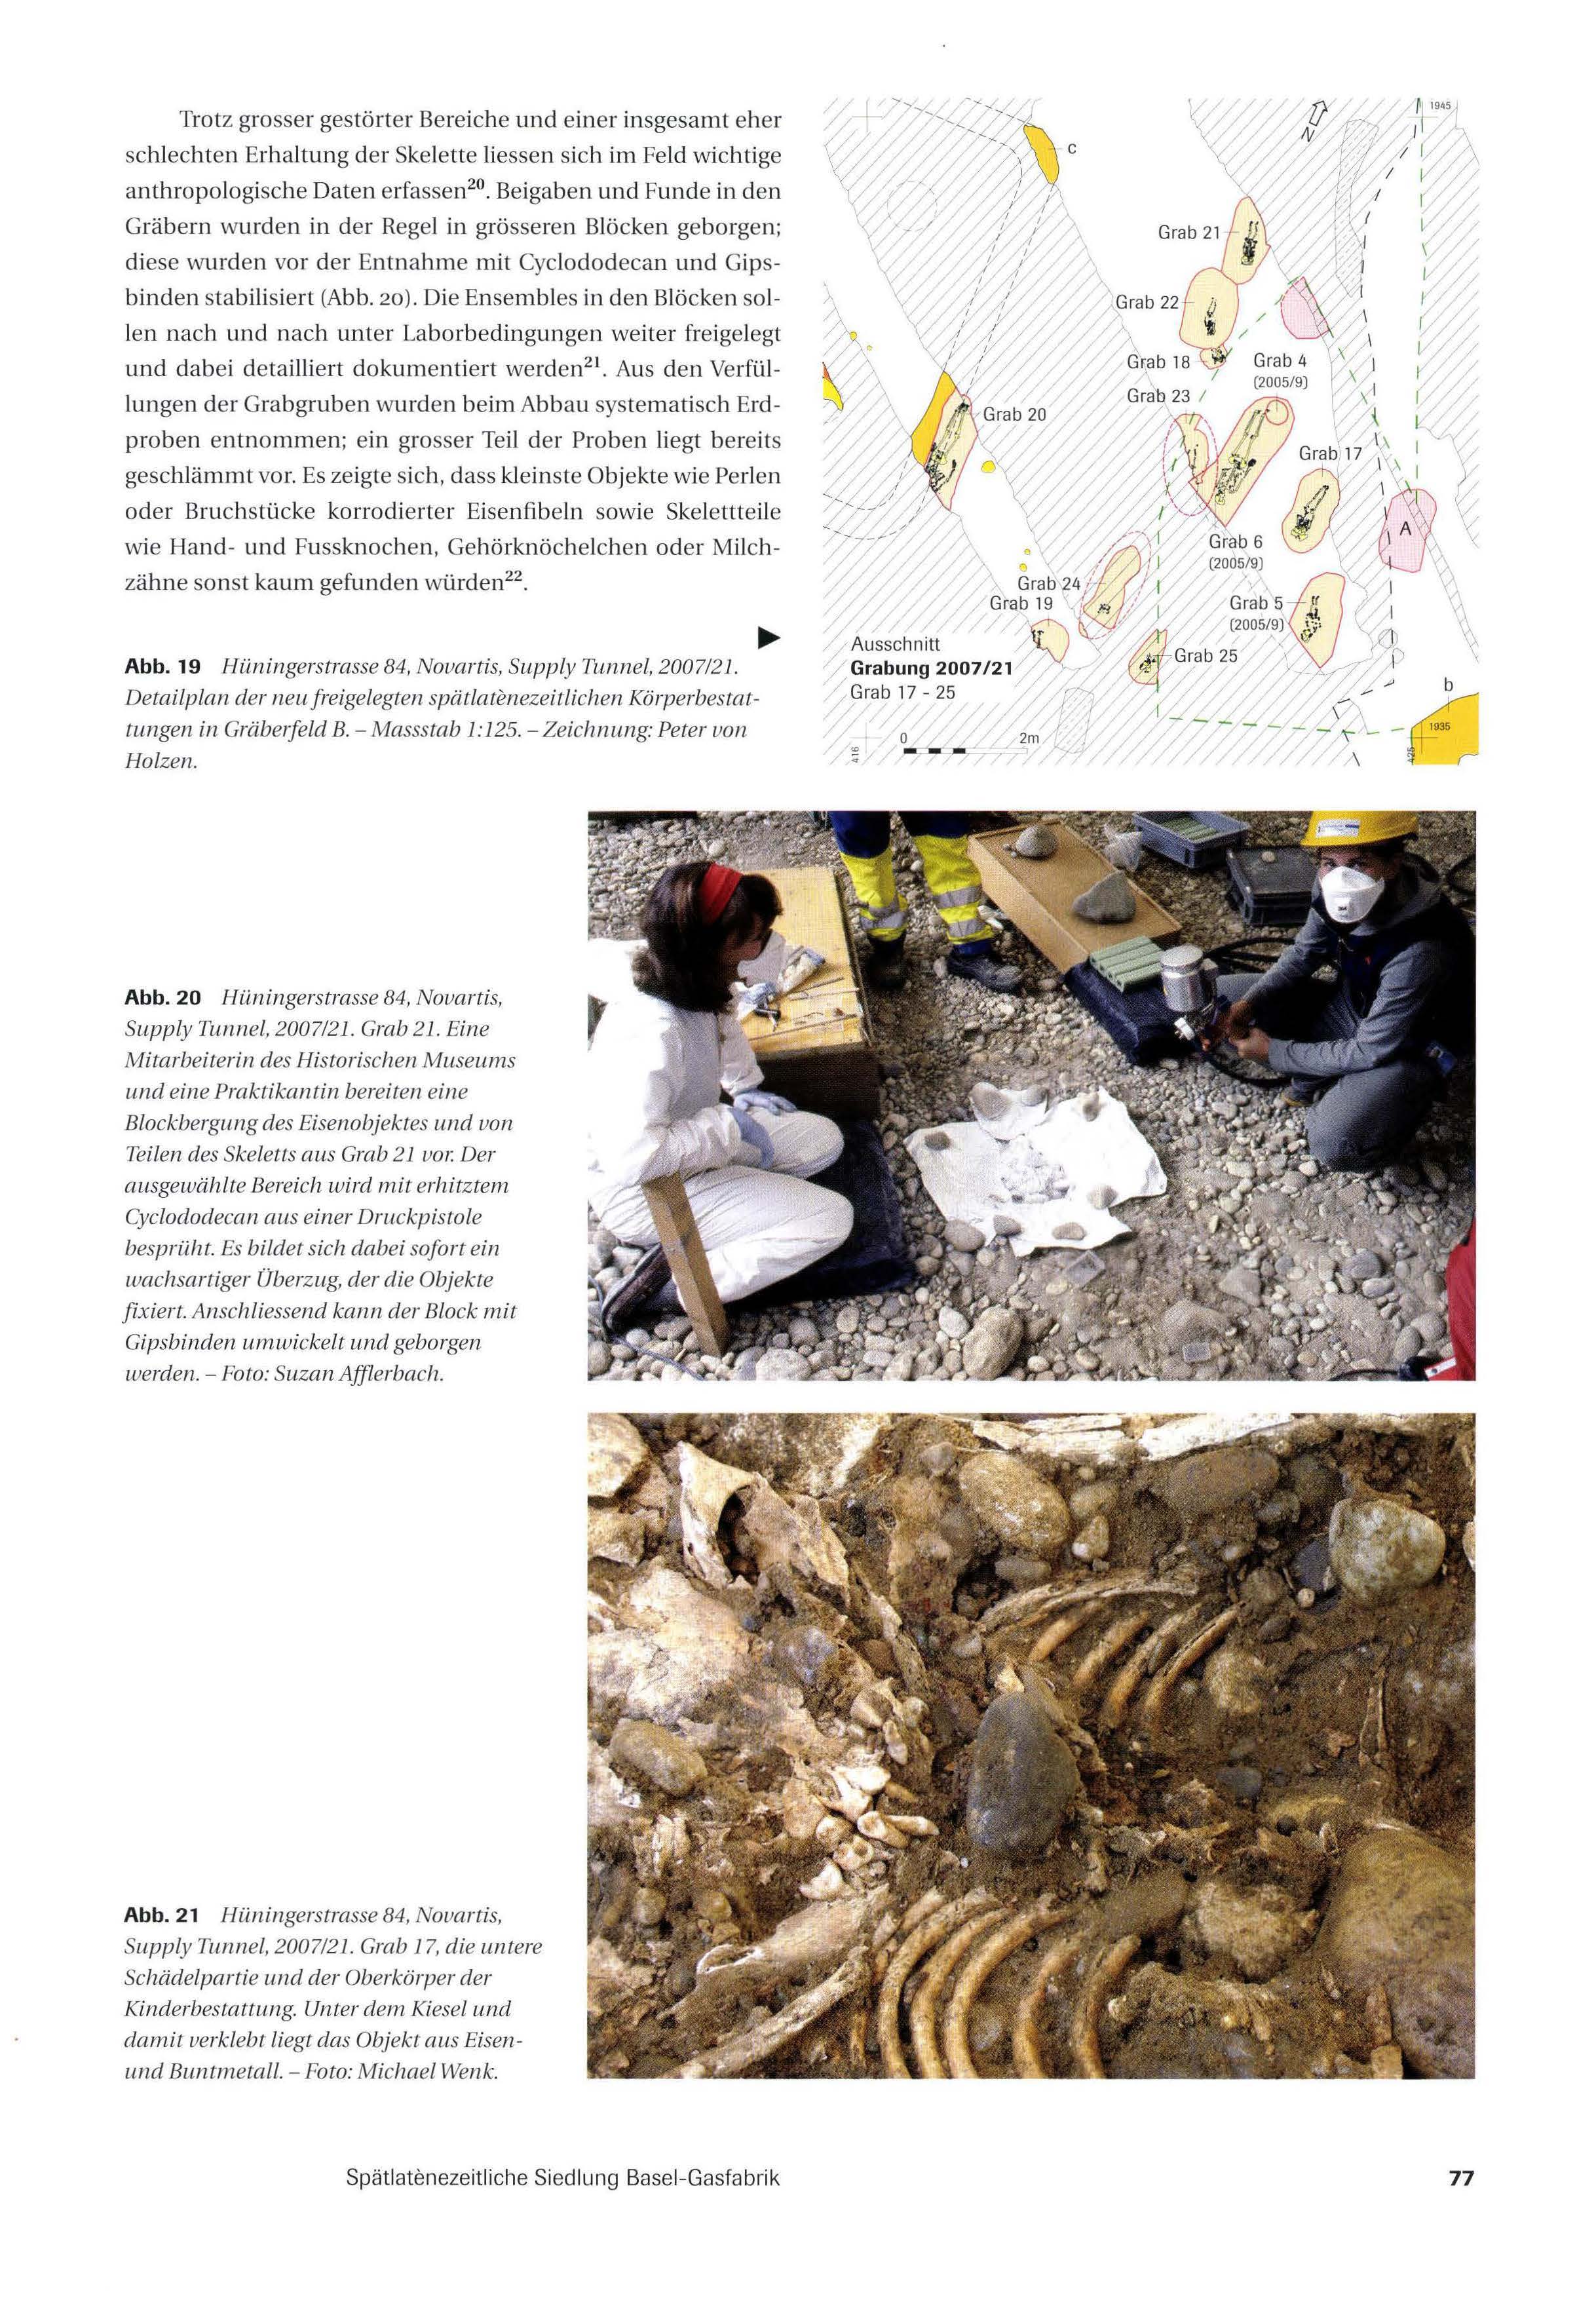 Seite mit Abbildungen der neu freigelegten spätlatènezeitlichen Körperbestattungen in Gräberfeld B.